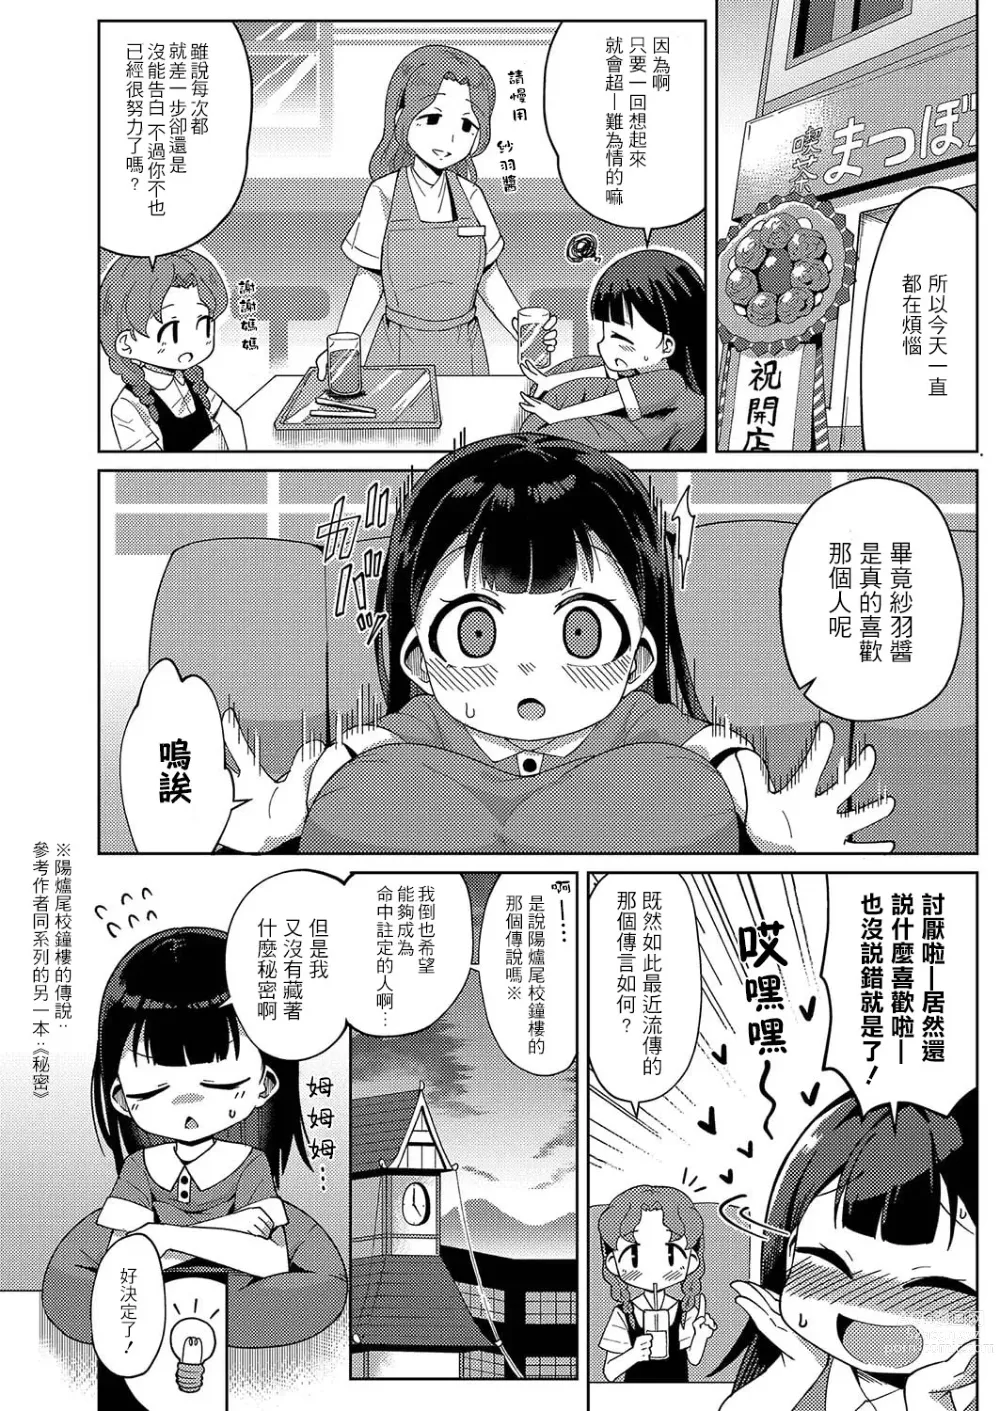 Page 3 of manga Kagura